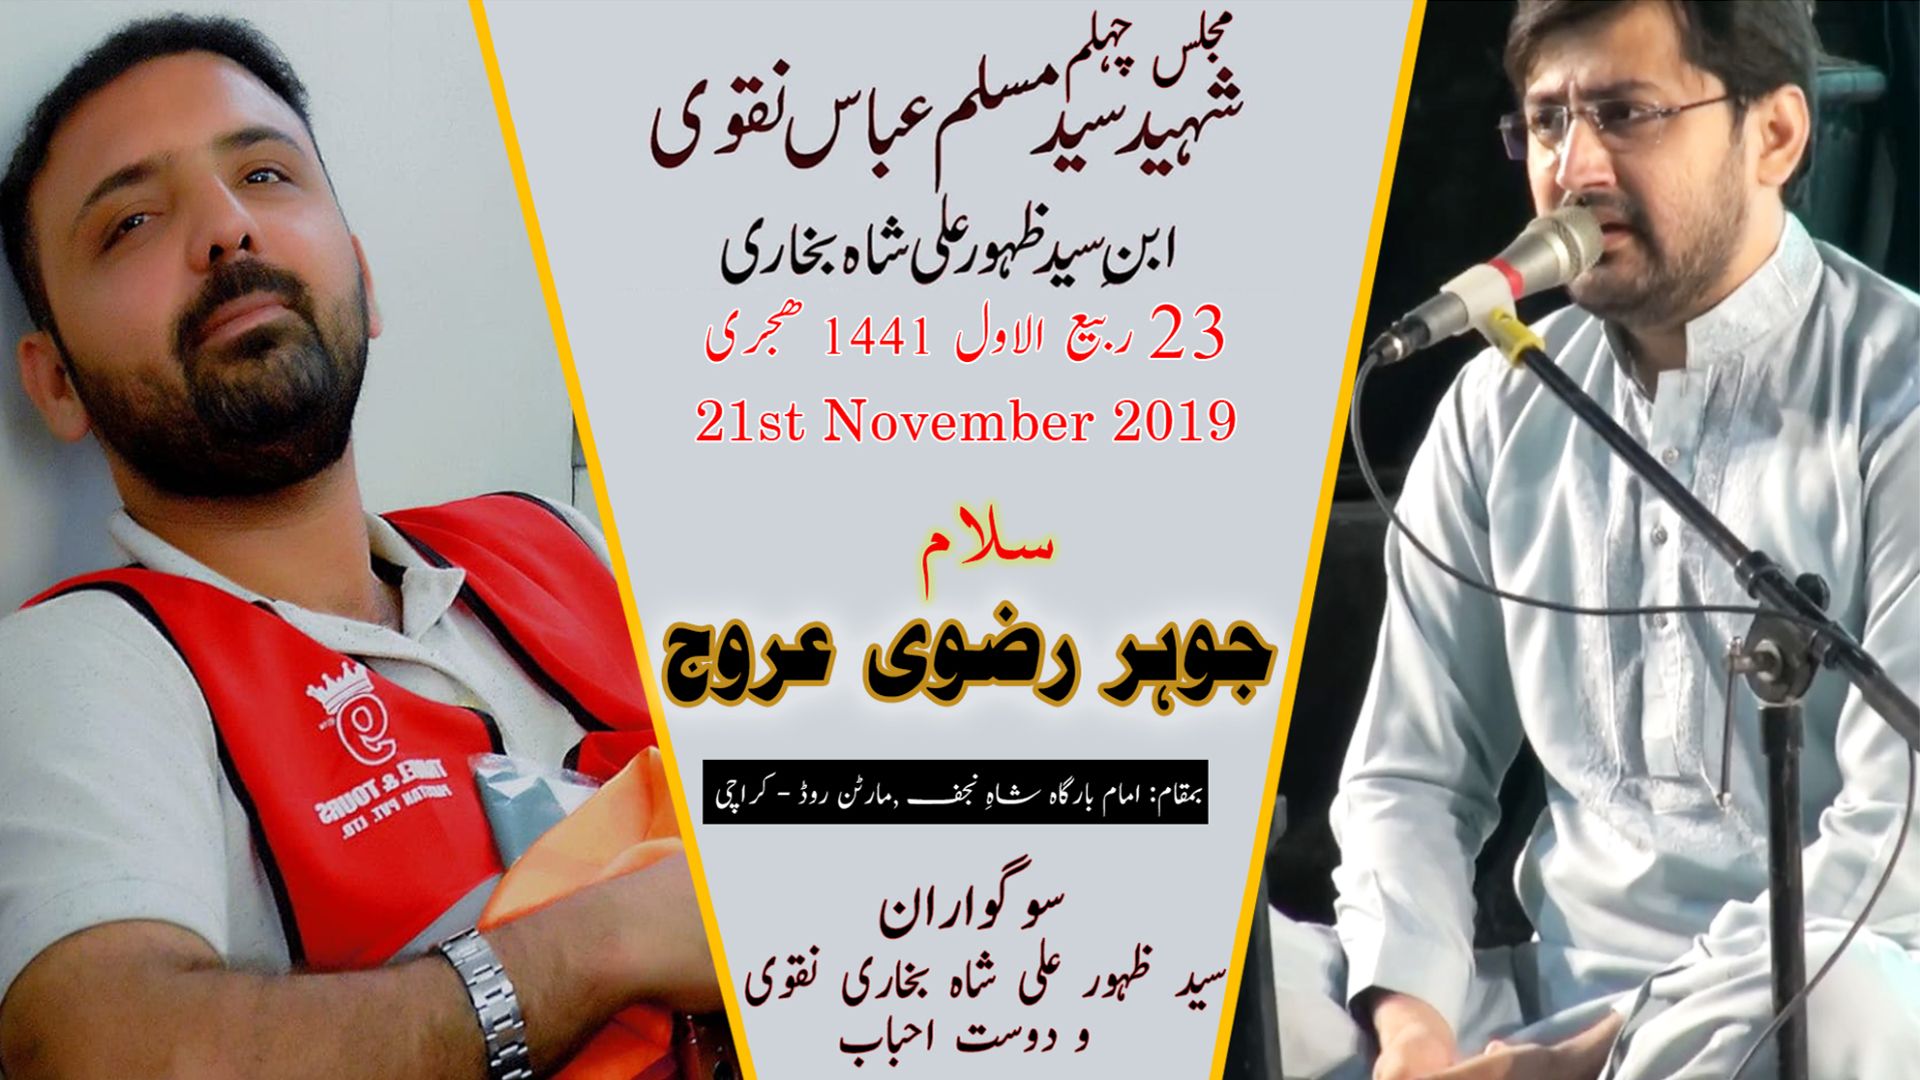 Salaam | Johar Rizvi | 21st November 2019 - Imam Bargah Shah-e-Najaf - Martan Road - Karachi